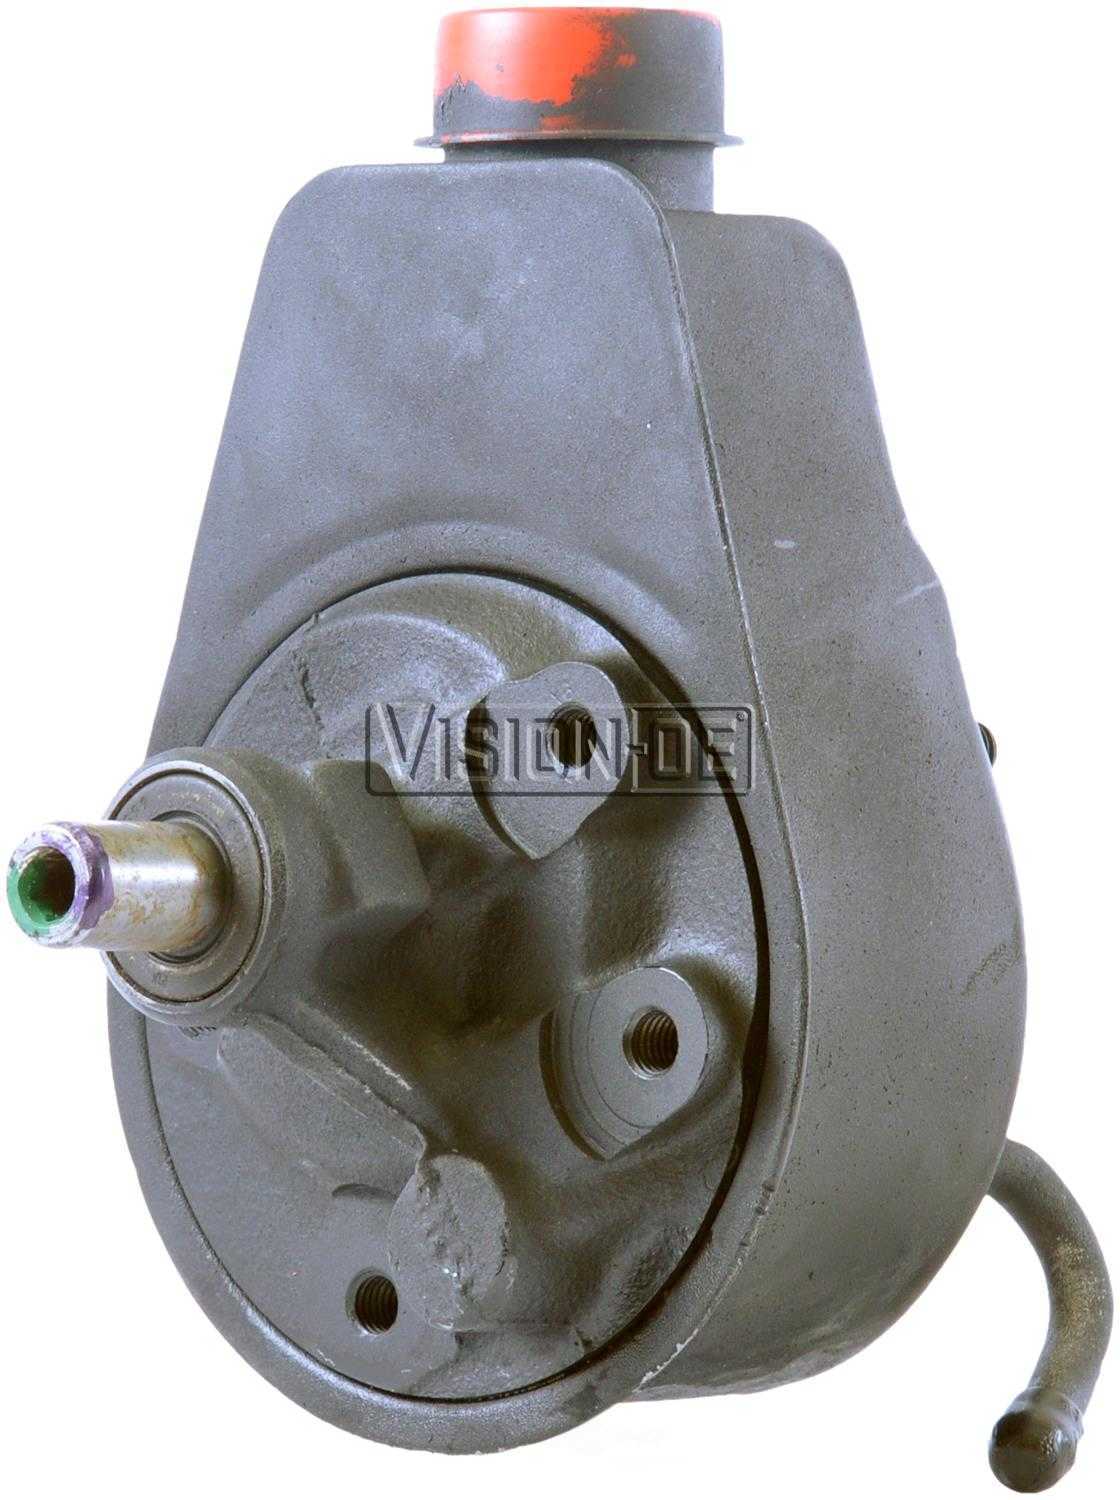 VISION-OE - Reman Power Steering Pump - VOE 731-2175